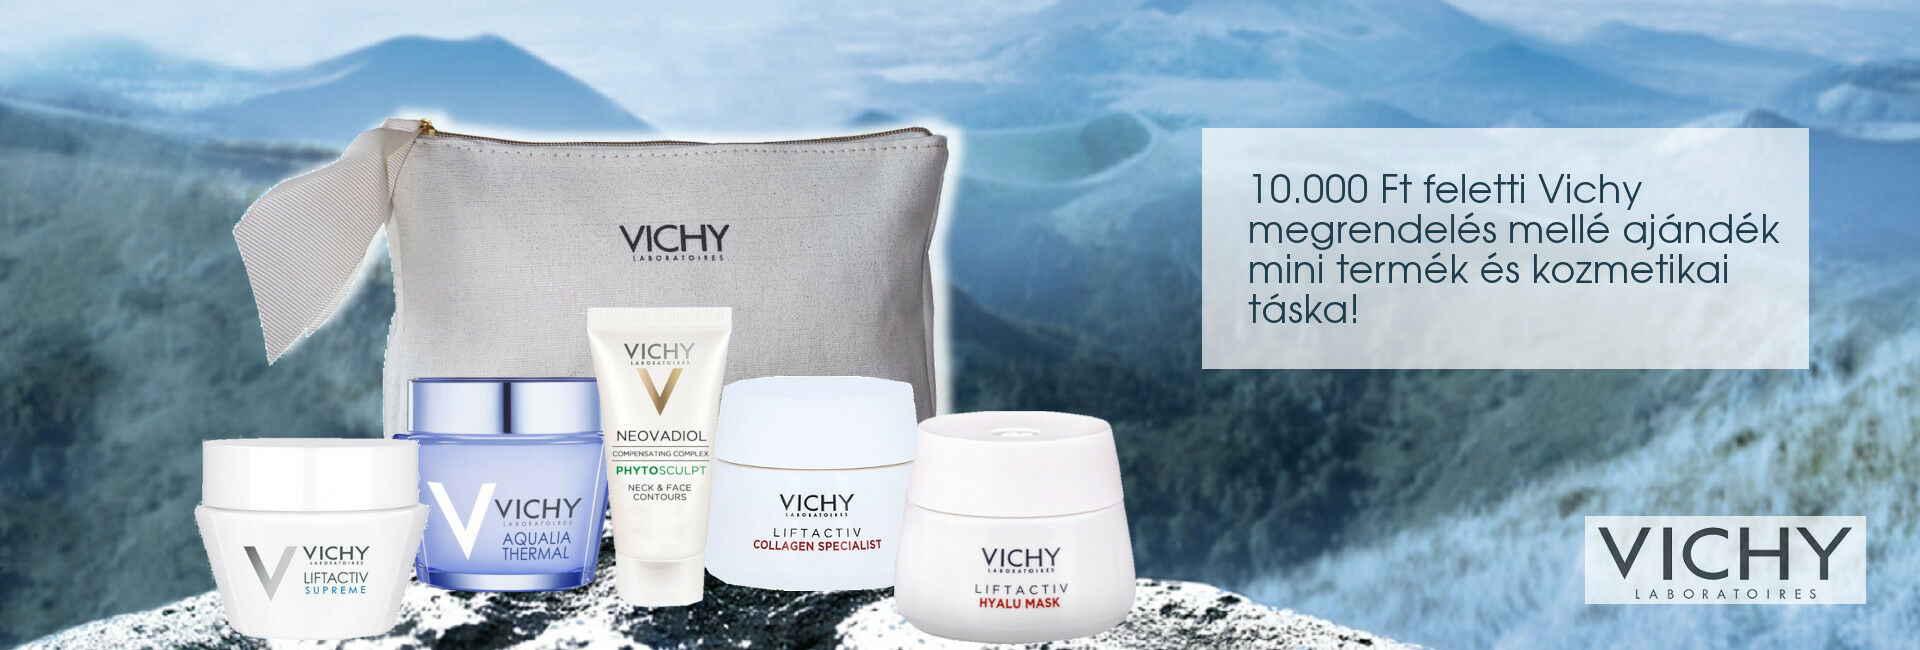 2020. augusztus 20-31. között minden 10.000 Ft feletti Vichy megrendelés mellé választható Vichy mini arcápolót és kozmetikai táskát adunk ajándékba!